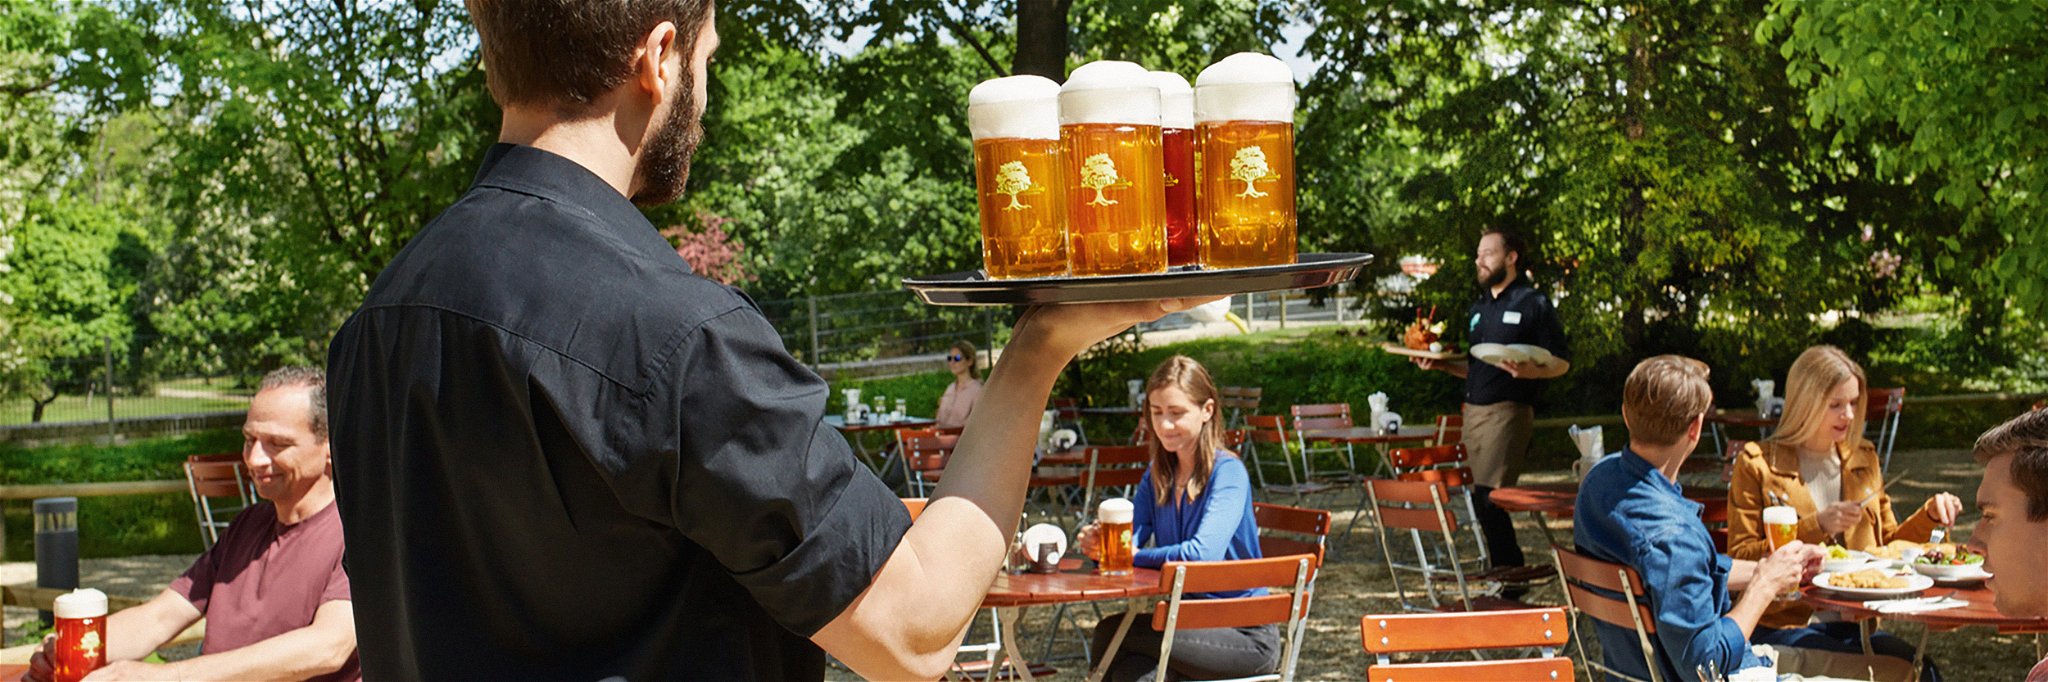 Das in den innovativen Kleinbrauereien gebraute Bier kann meist gleich  vor Ort verkostet werden.